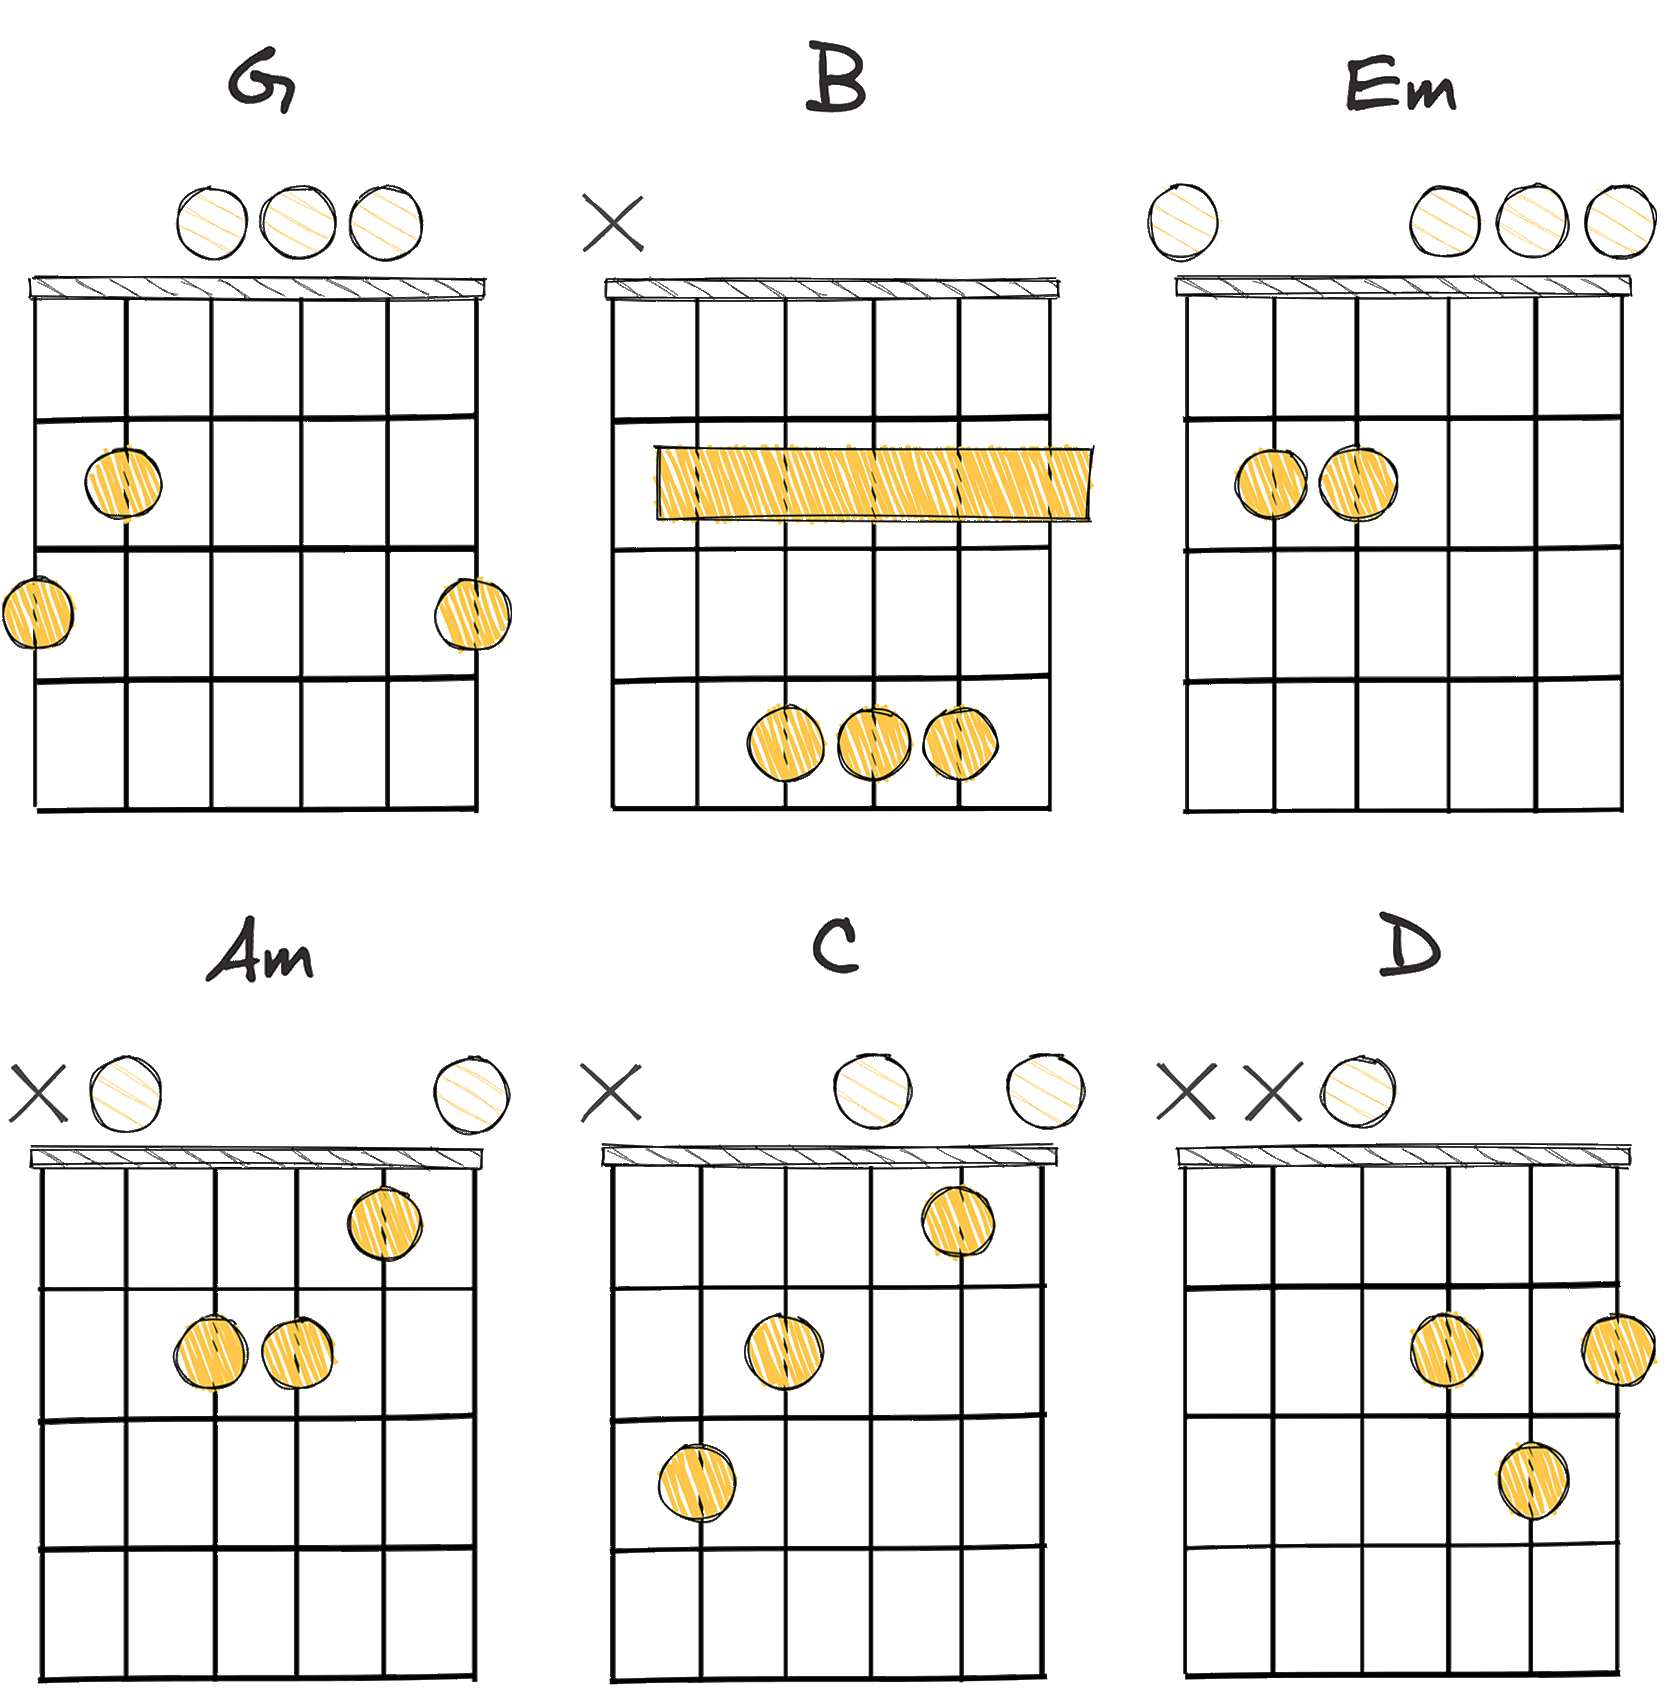 I-III-vi-ii-IV-V (1-3-6-2-4-5) chords diagram